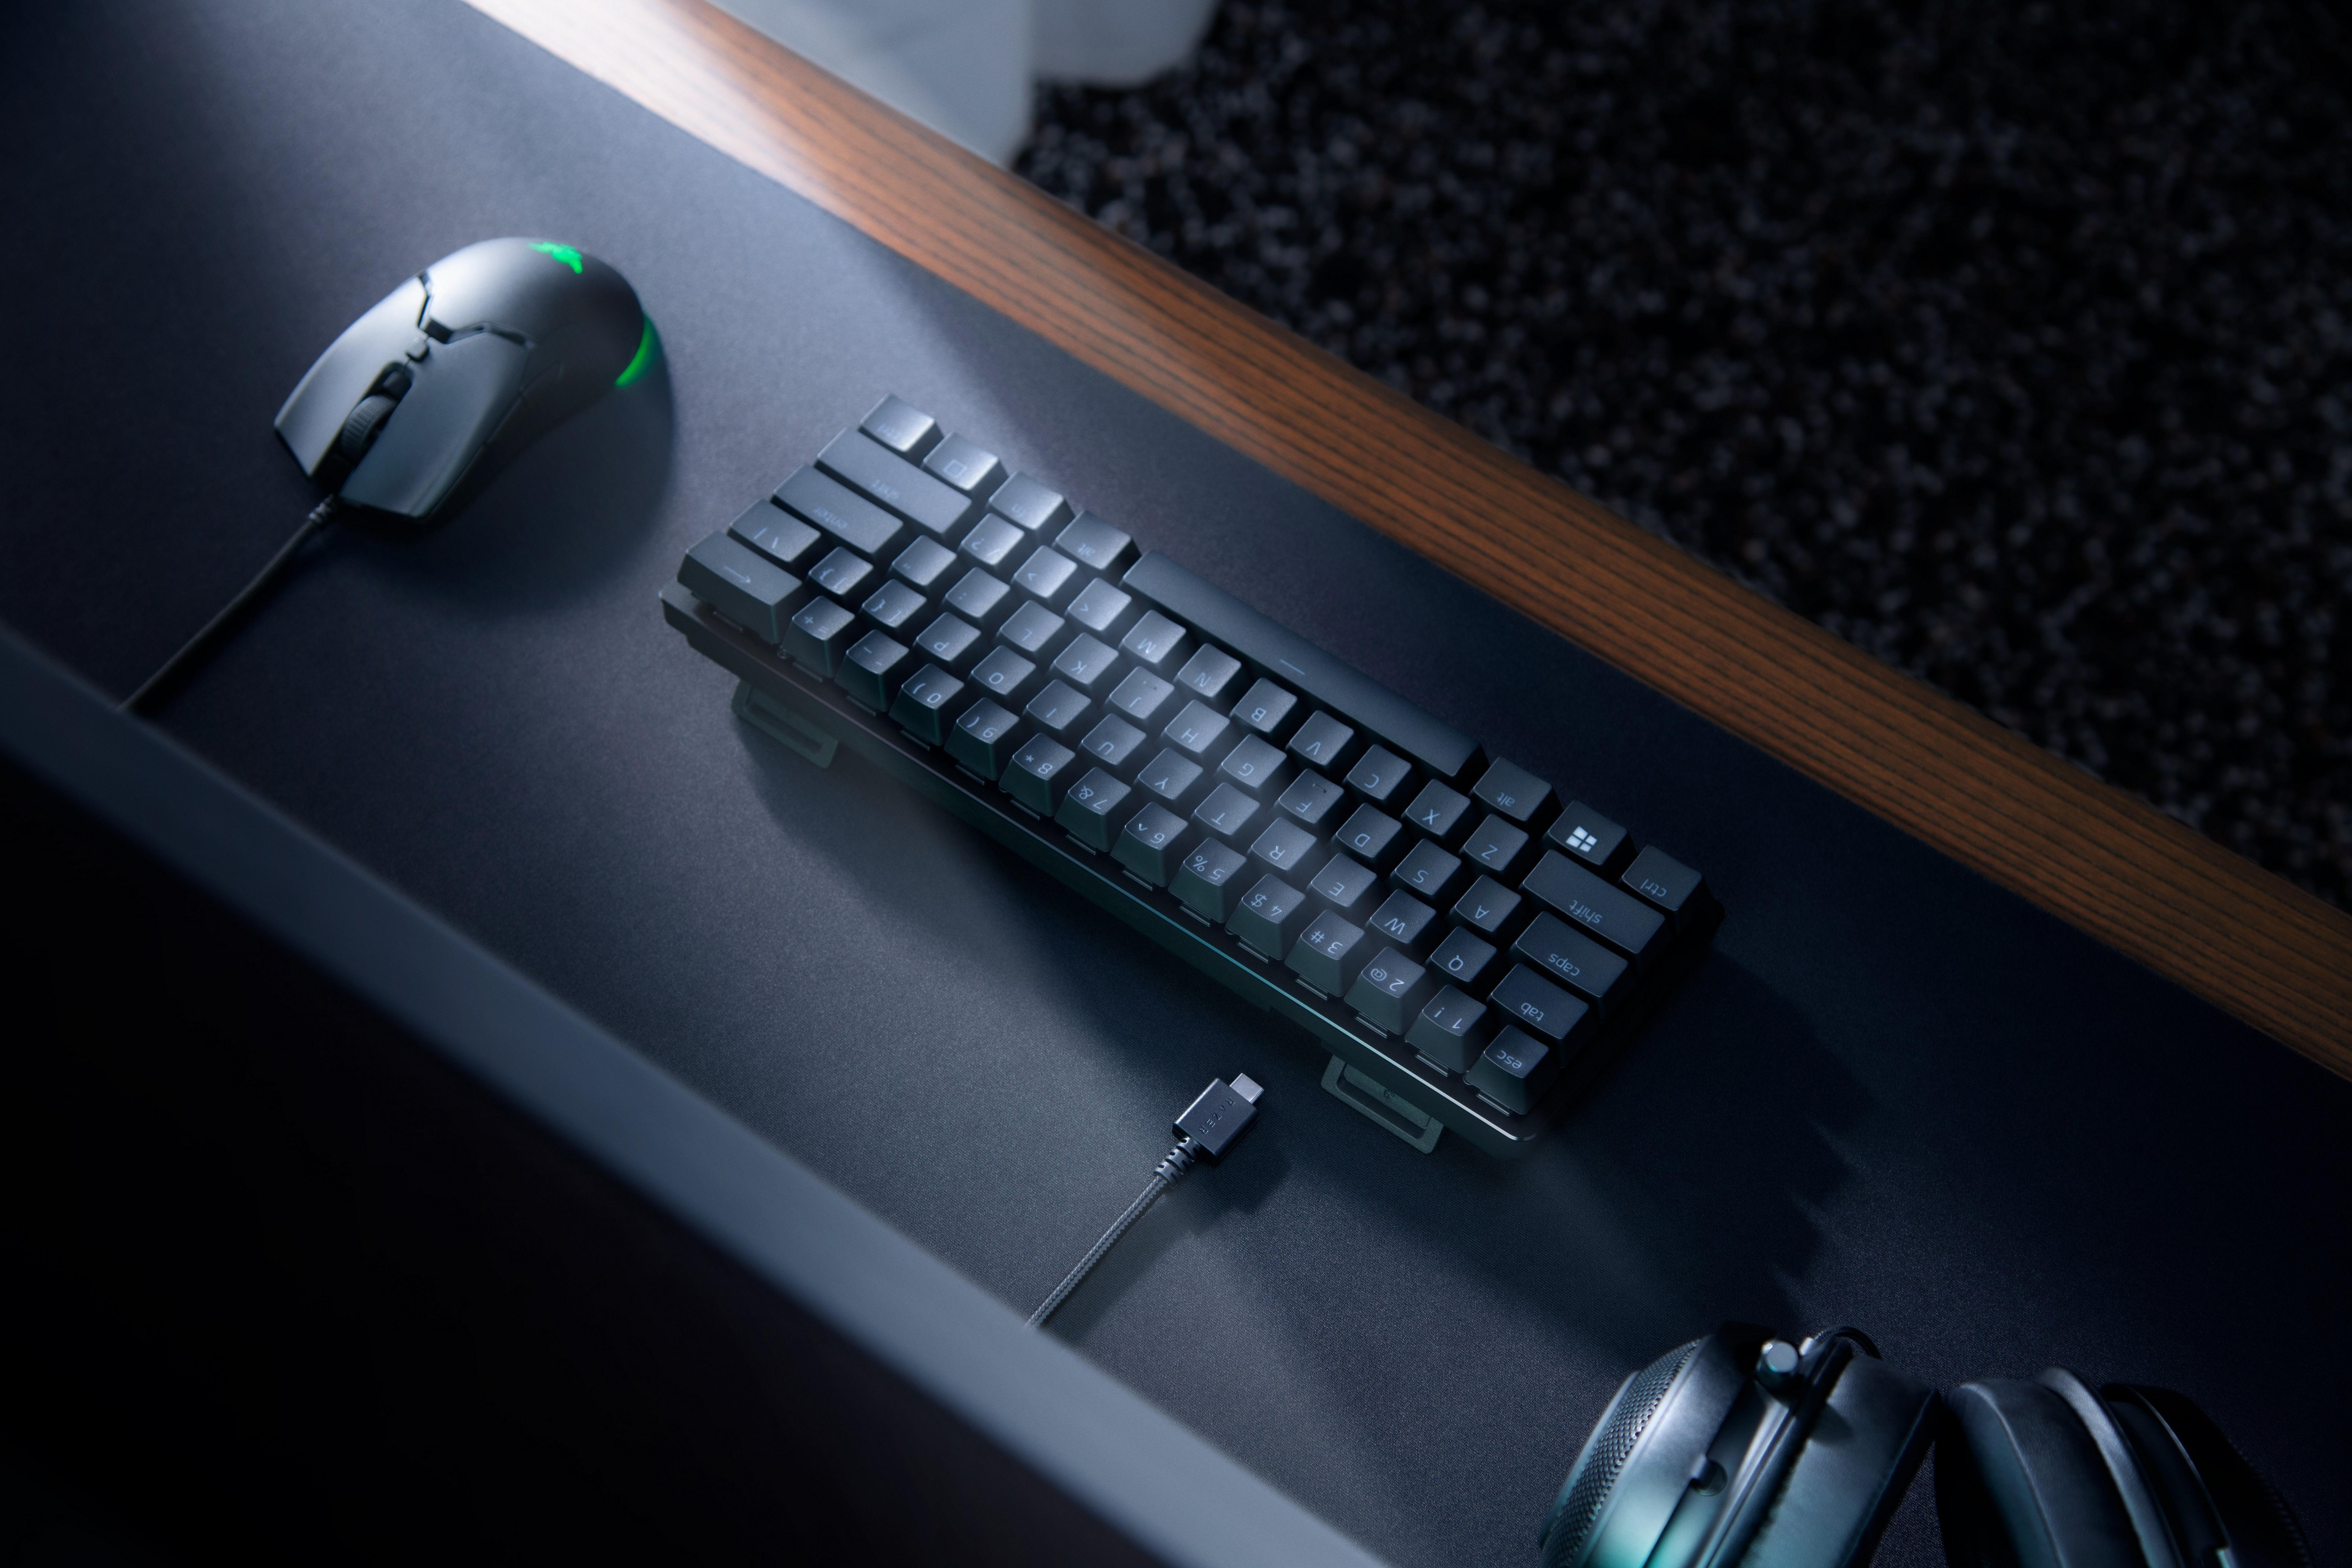 Razer Huntsman Mini Review - Incredible 60% gaming keyboard! - Vamers